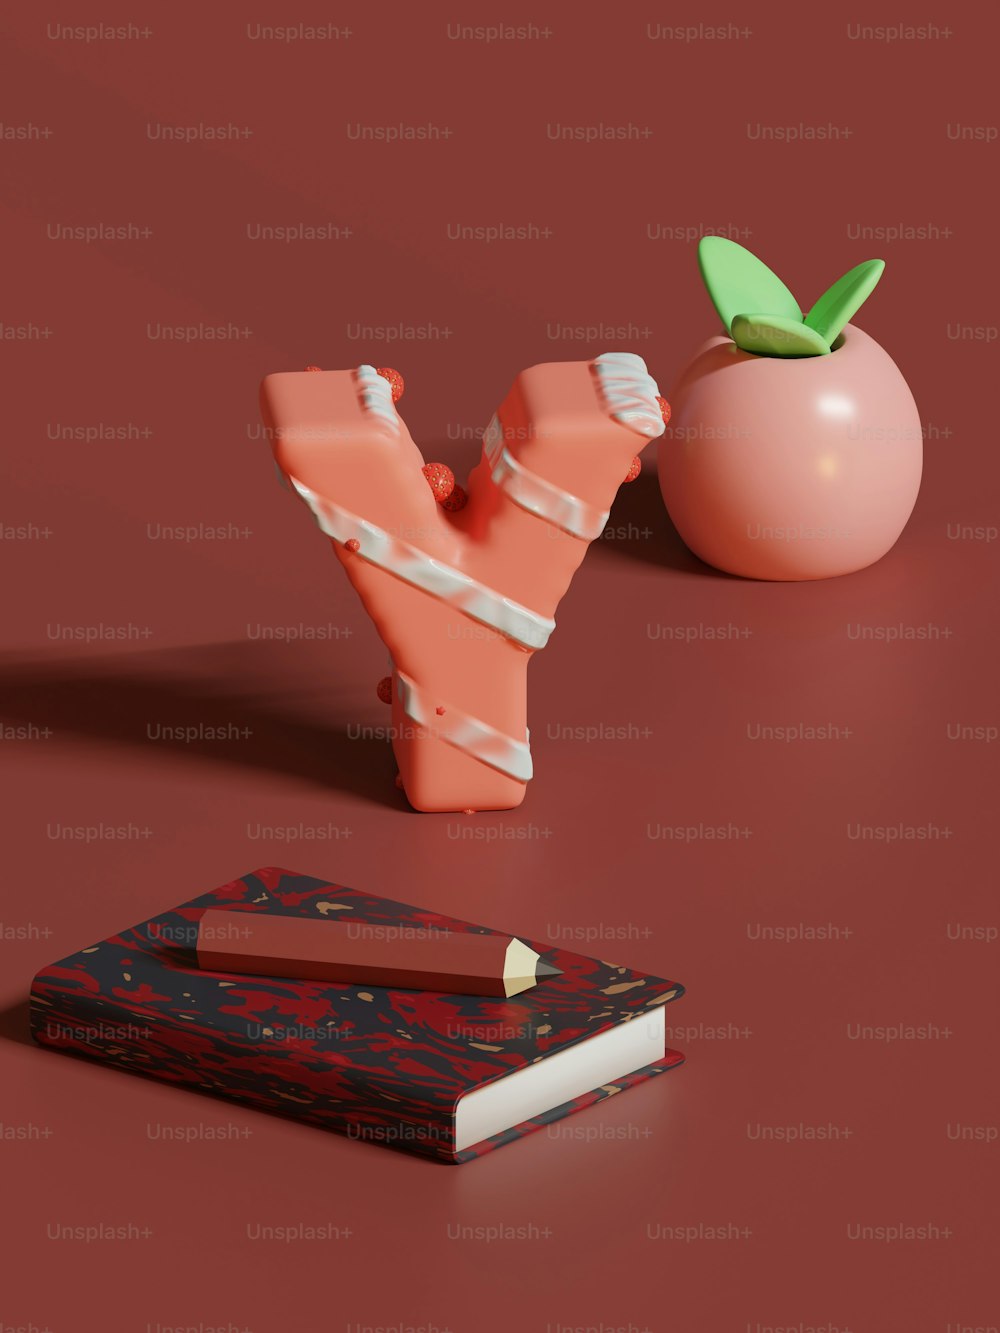 Ein Stück Papier neben einem Apfel und einem Buch